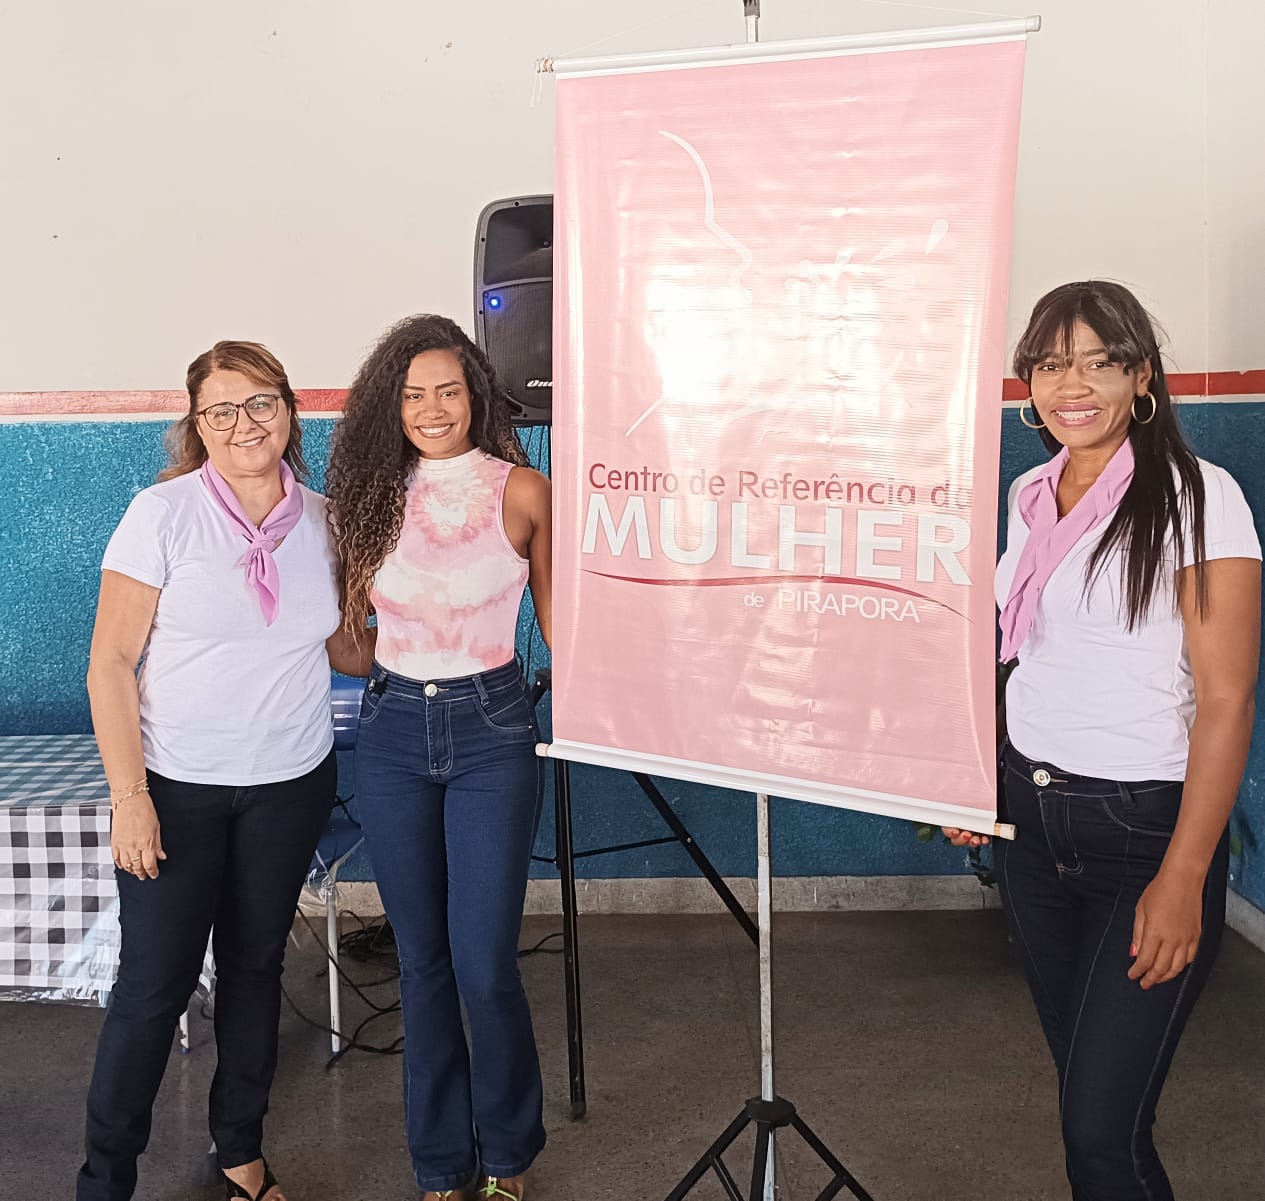 Prefeitura de Pirapora inicia ações voltadas para mulheres